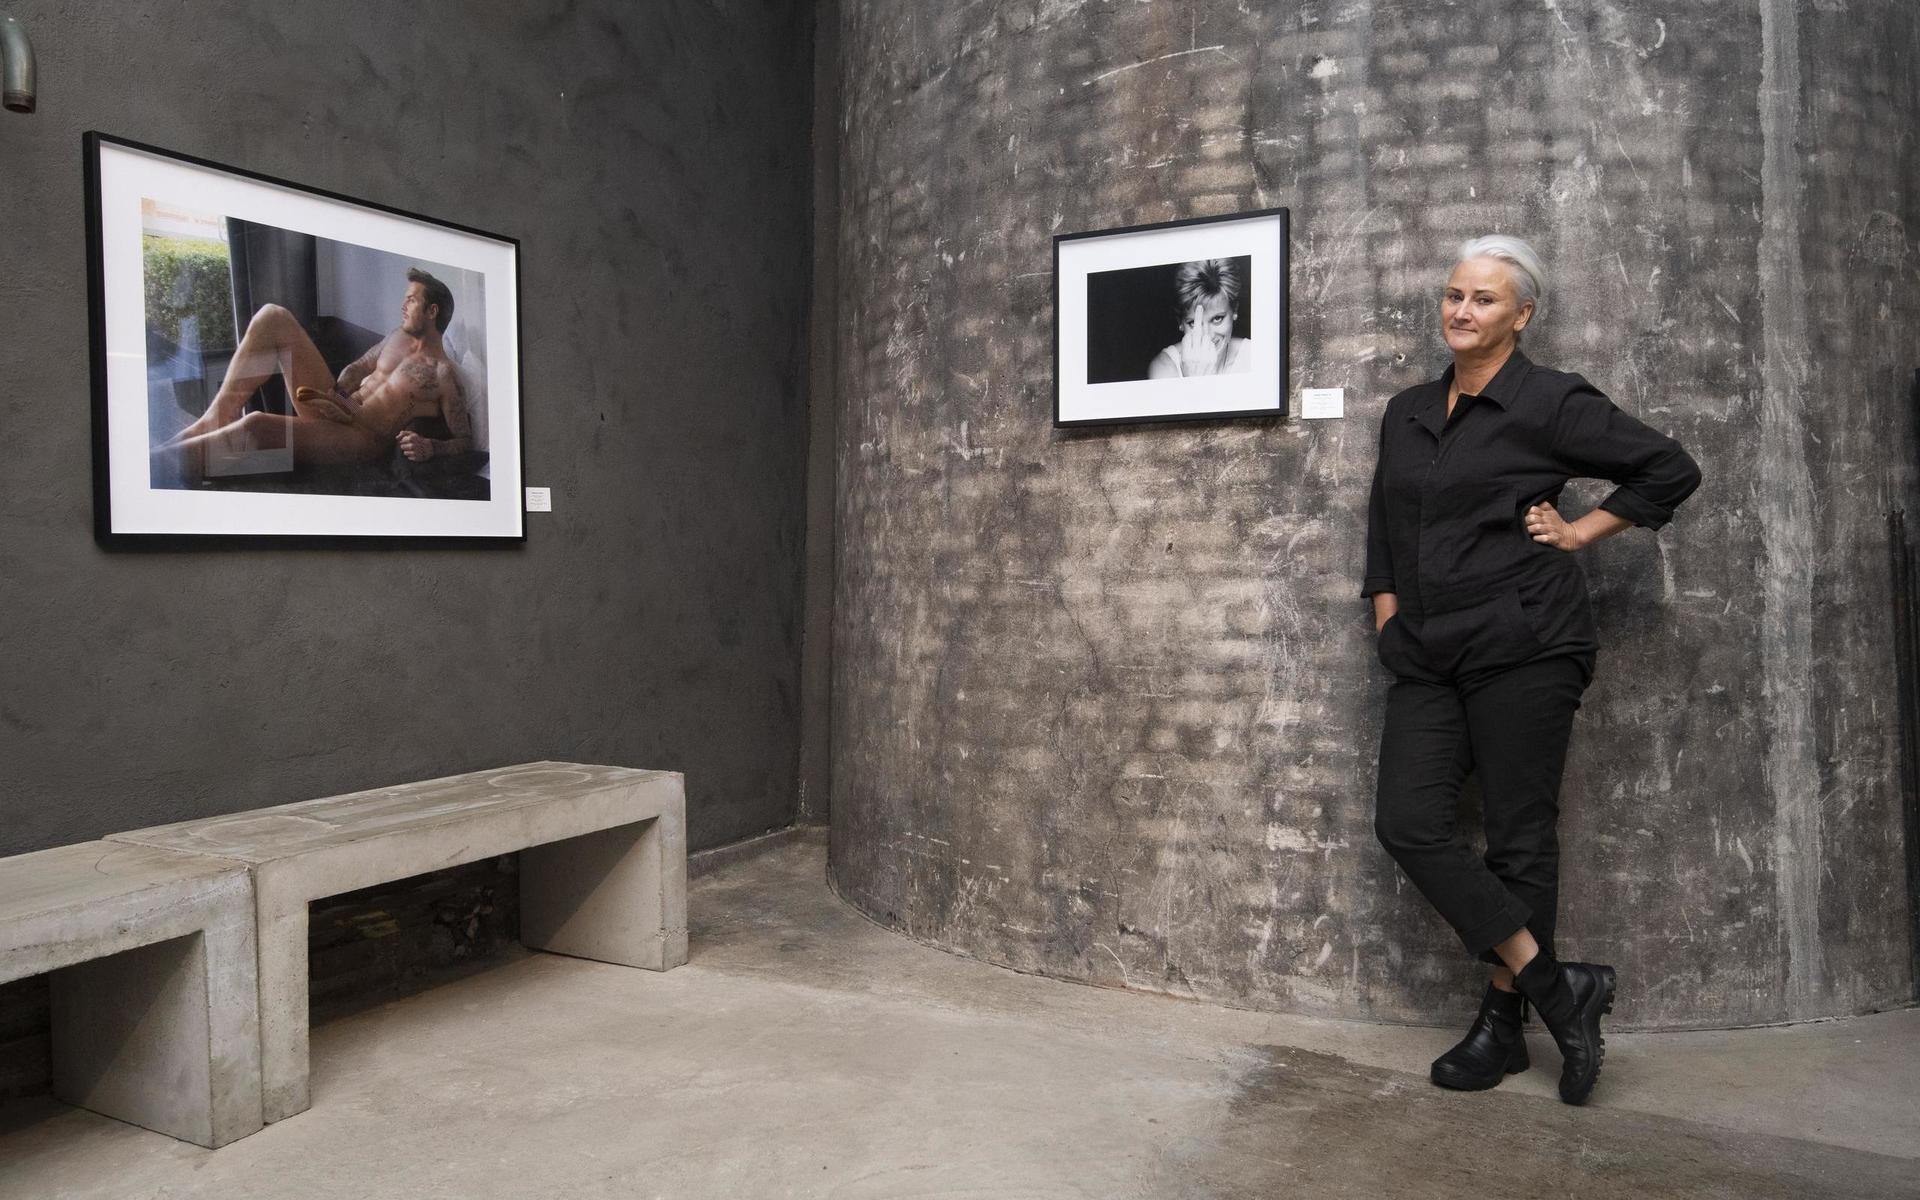 Nette Johansson blir glad varje morgon när hon kommer in i galleriet och möts av bilden på David Beckham, liggandes naken på en soffa med en hot dog över sin mest privata kroppsdel. ”Det är väldigt mycket humor i Alisons fotografier.”